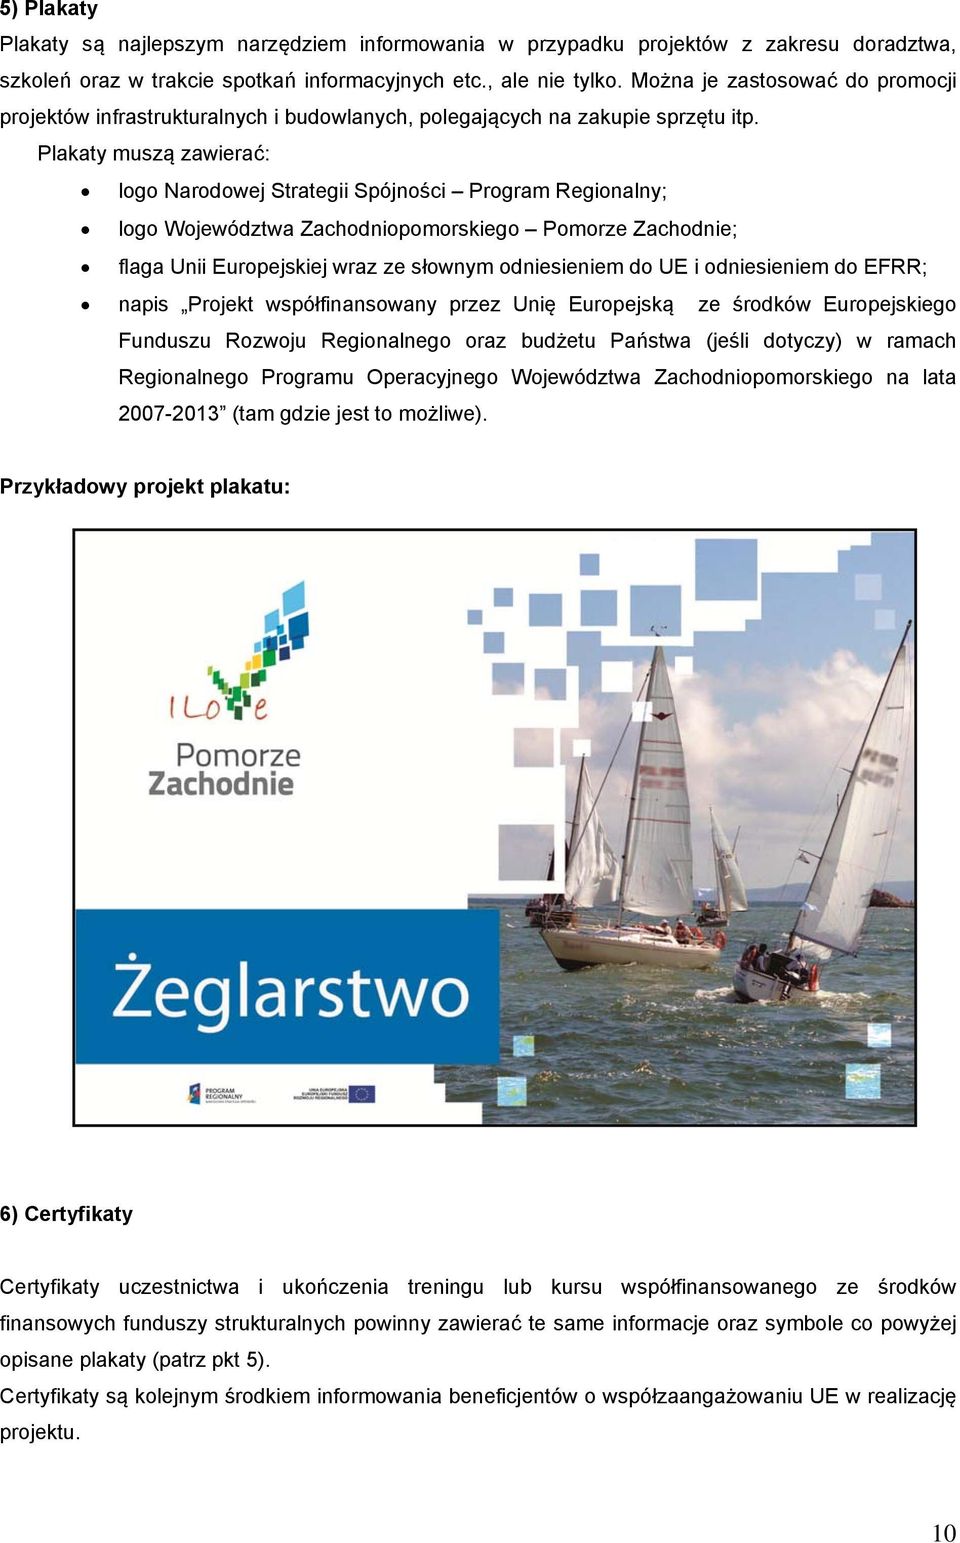 Plakaty muszą zawierać: logo Narodowej Strategii Spójności Program Regionalny; logo Województwa Zachodniopomorskiego Pomorze Zachodnie; flaga Unii Europejskiej wraz ze słownym odniesieniem do UE i